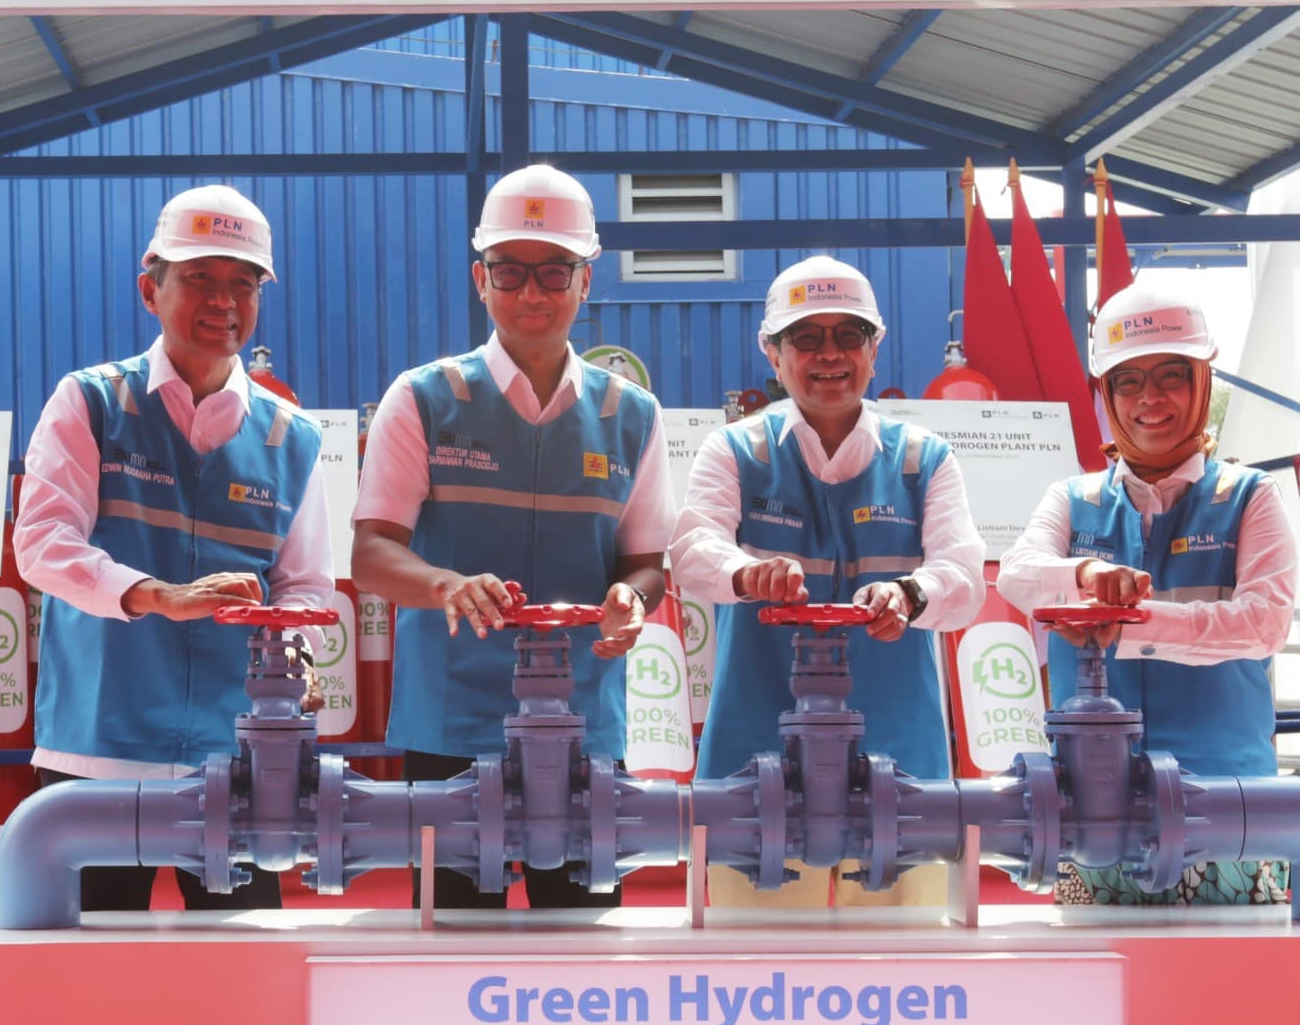 Terbanyak di Asia Tenggara! PLN Resmikan 21 Unit Green Hydrogen Plant, Produksi 199 Ton Hidrogen Per Tahun